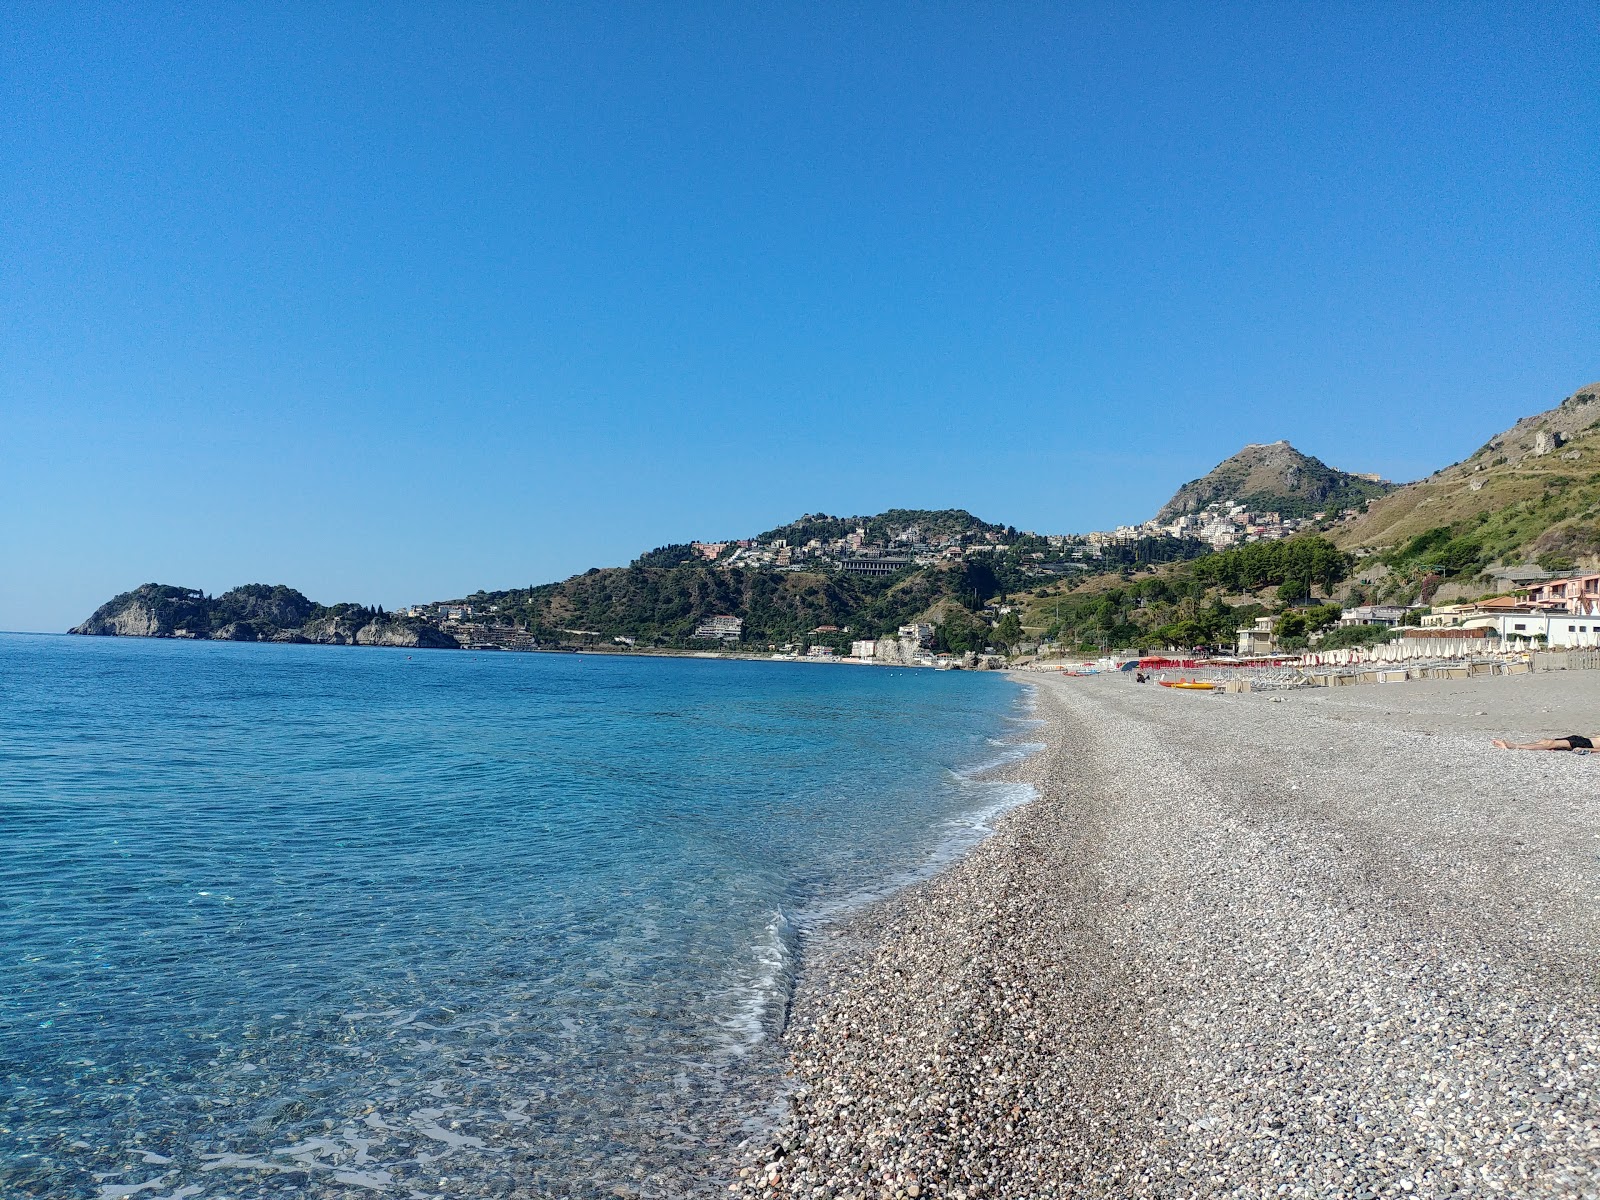 Foto av Spiaggia di Mazzeo med lätt sten yta